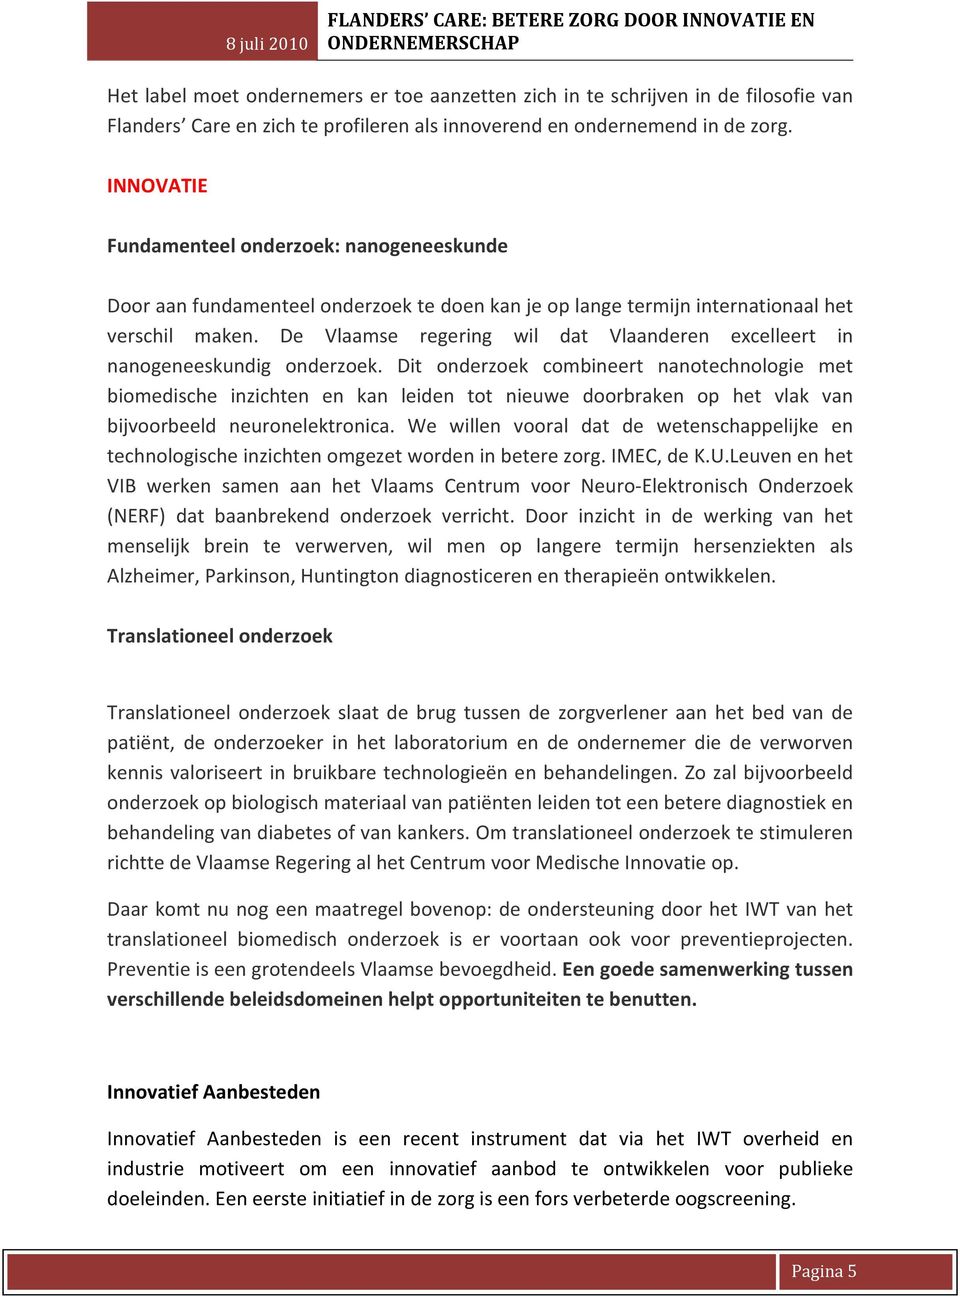 De Vlaamse regering wil dat Vlaanderen excelleert in nanogeneeskundig onderzoek.